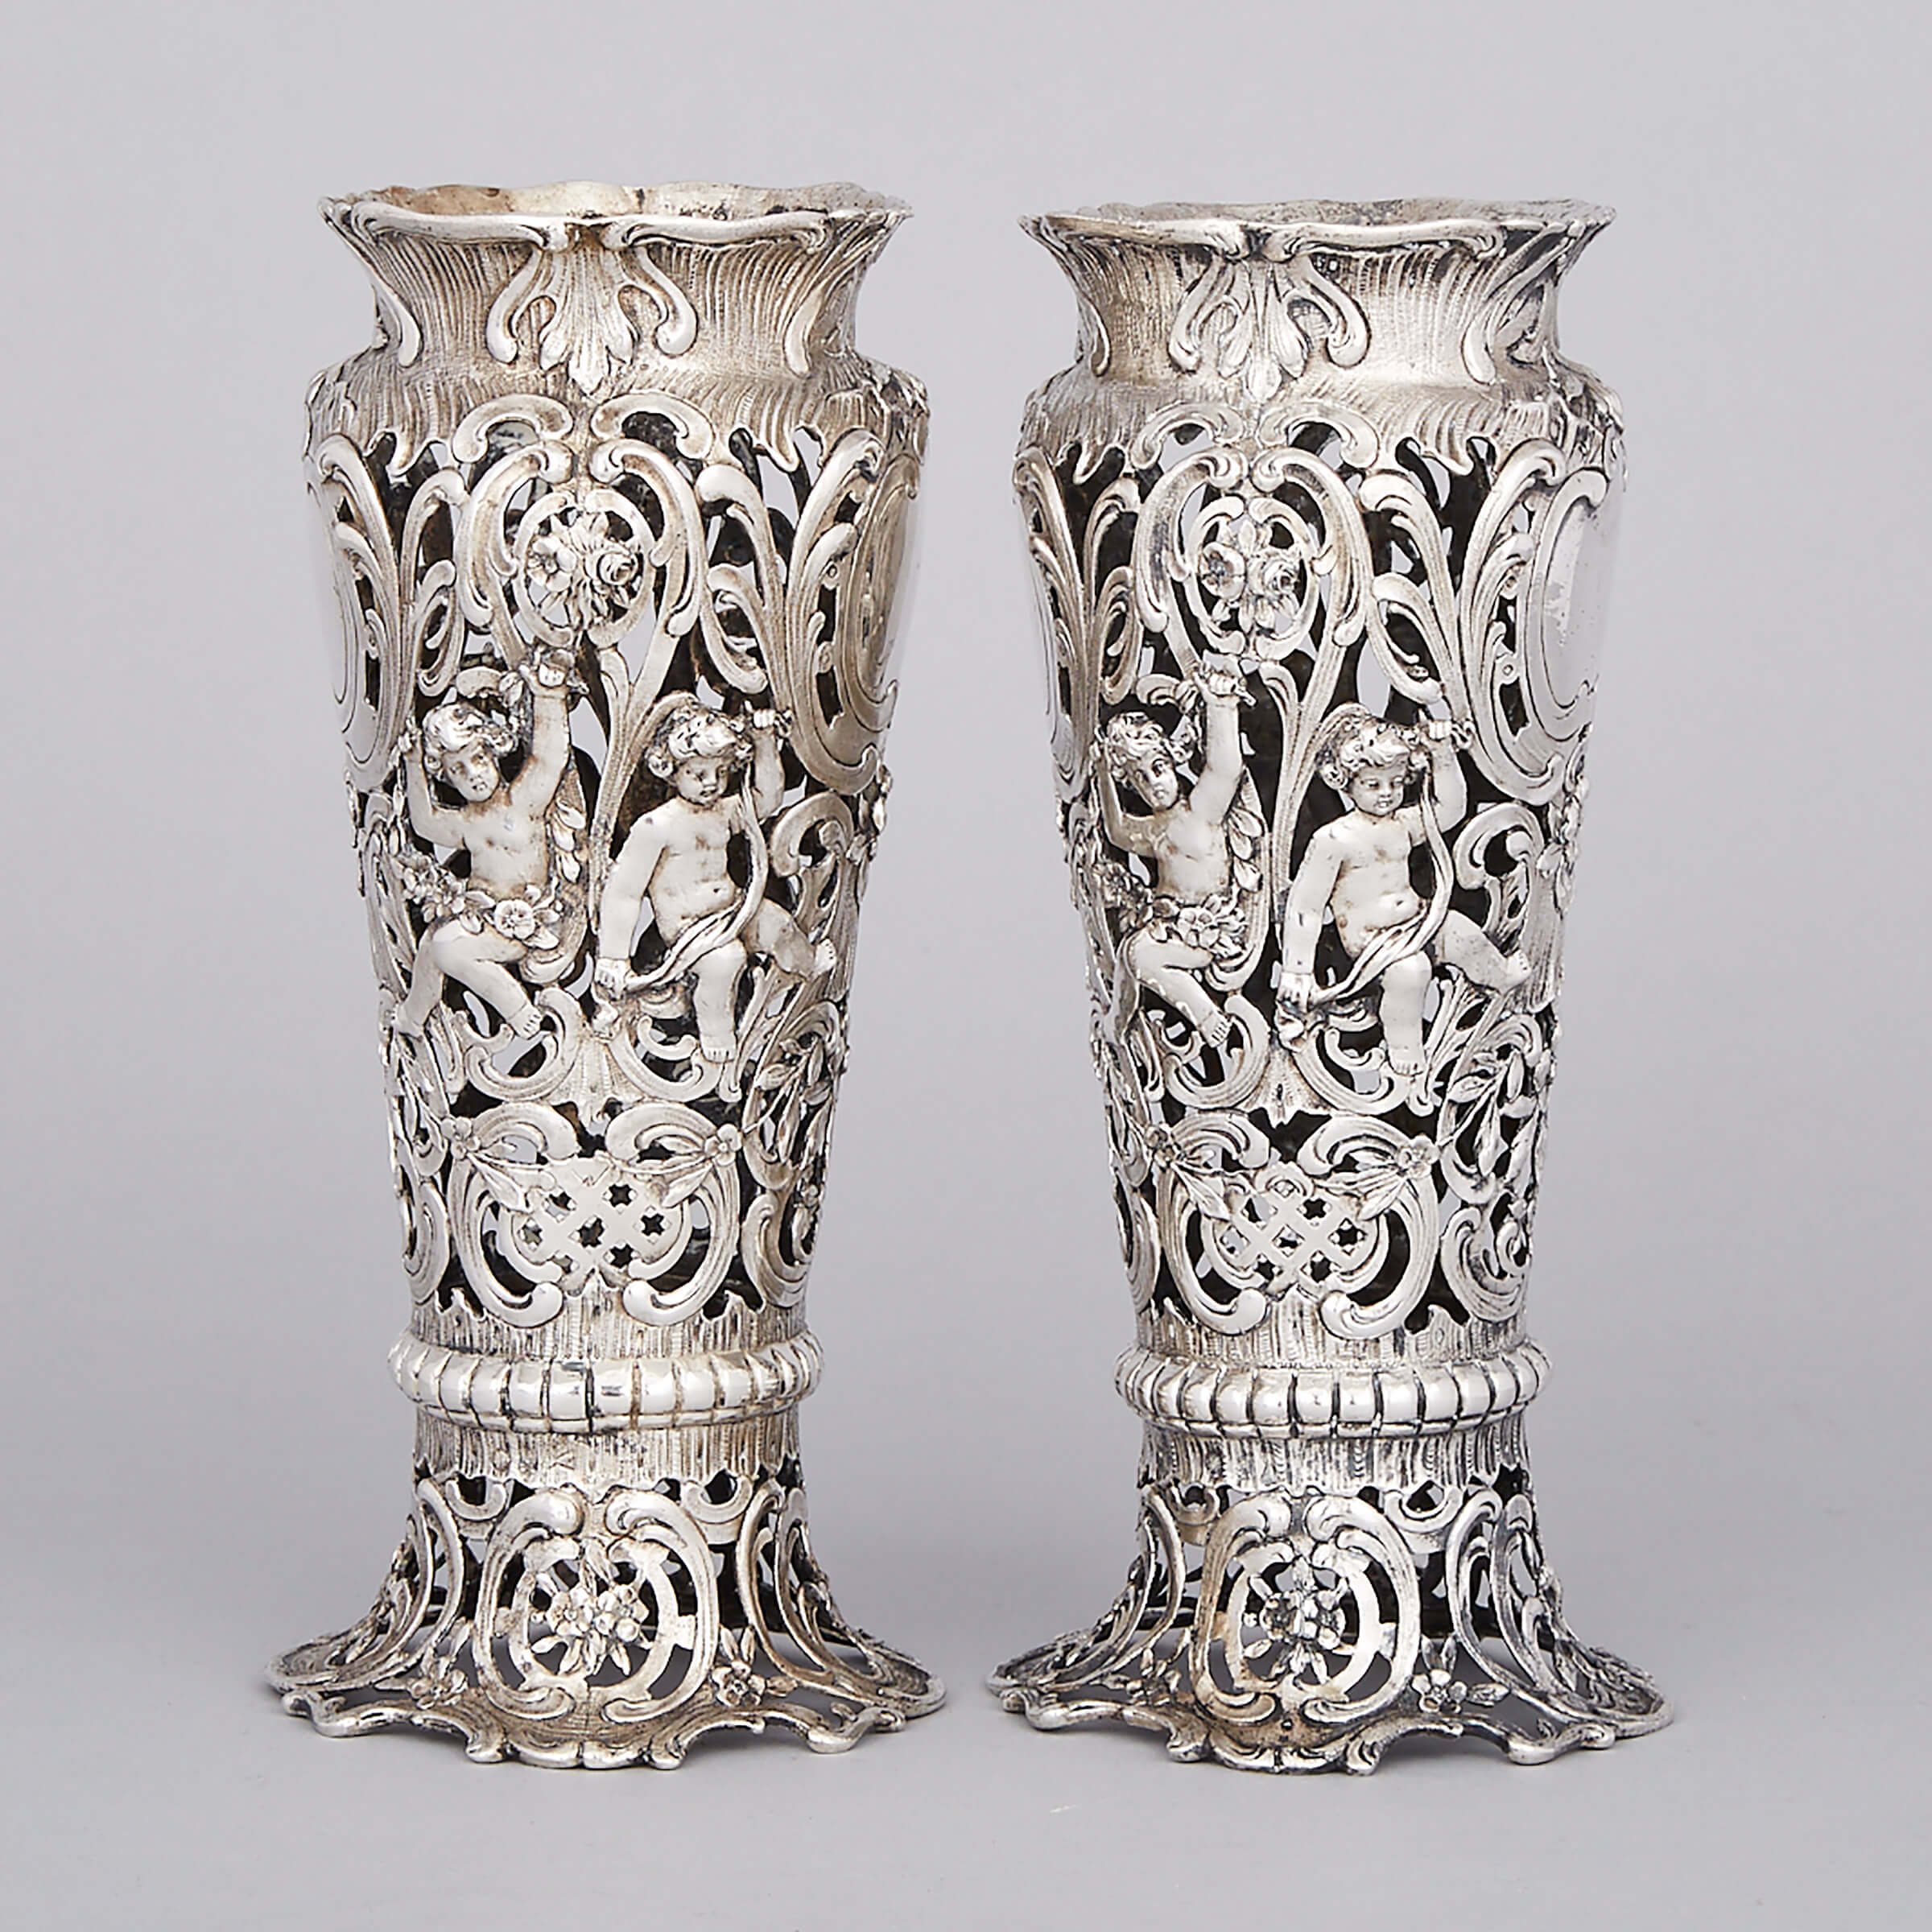 Pair of German Silver Pierced Vases, Storck & Sinsheimer, Hanau, c.1900